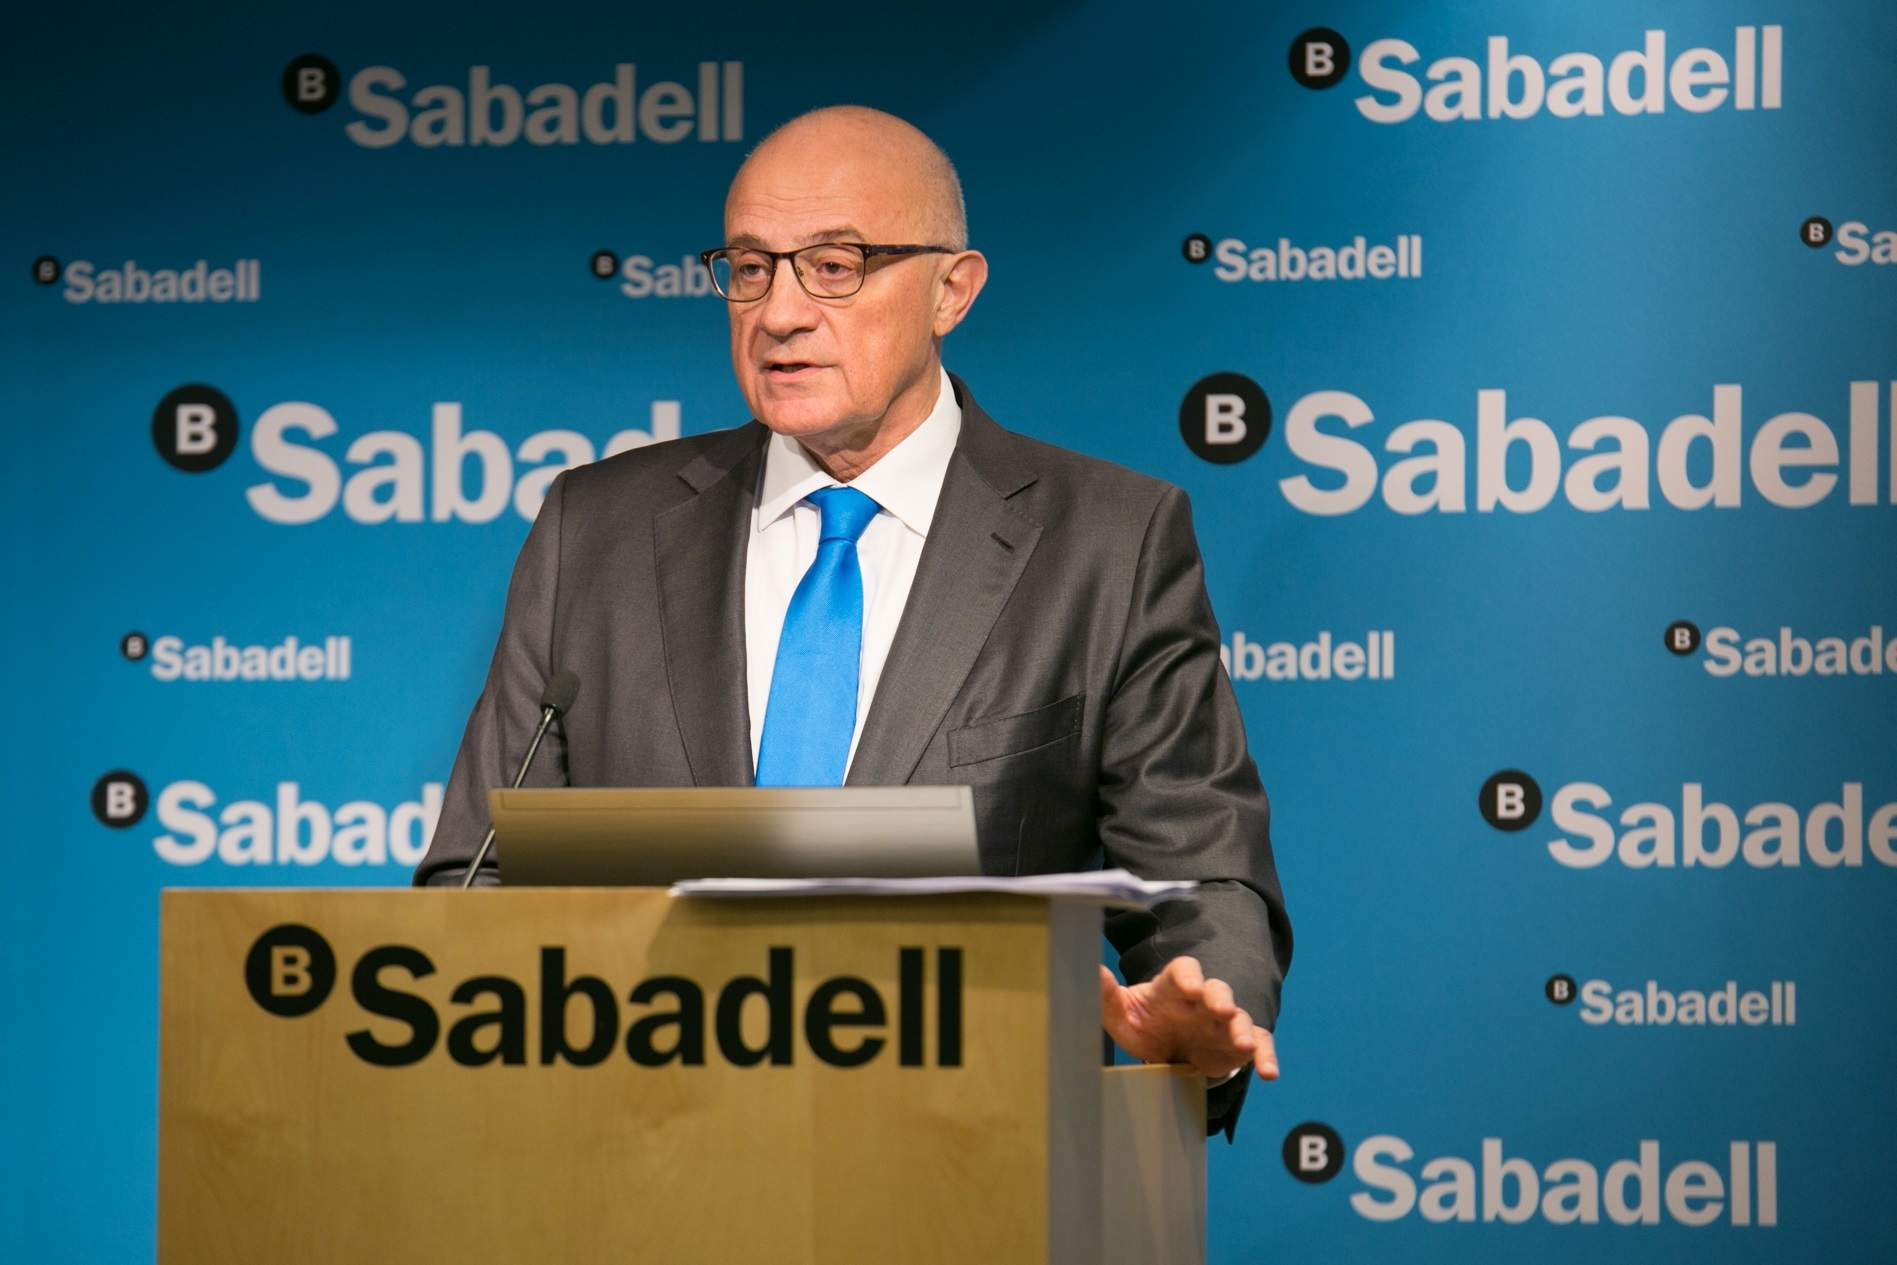 El Sabadell denuncia l'opa davant la CNMV: dona informació il·legal i incompleta